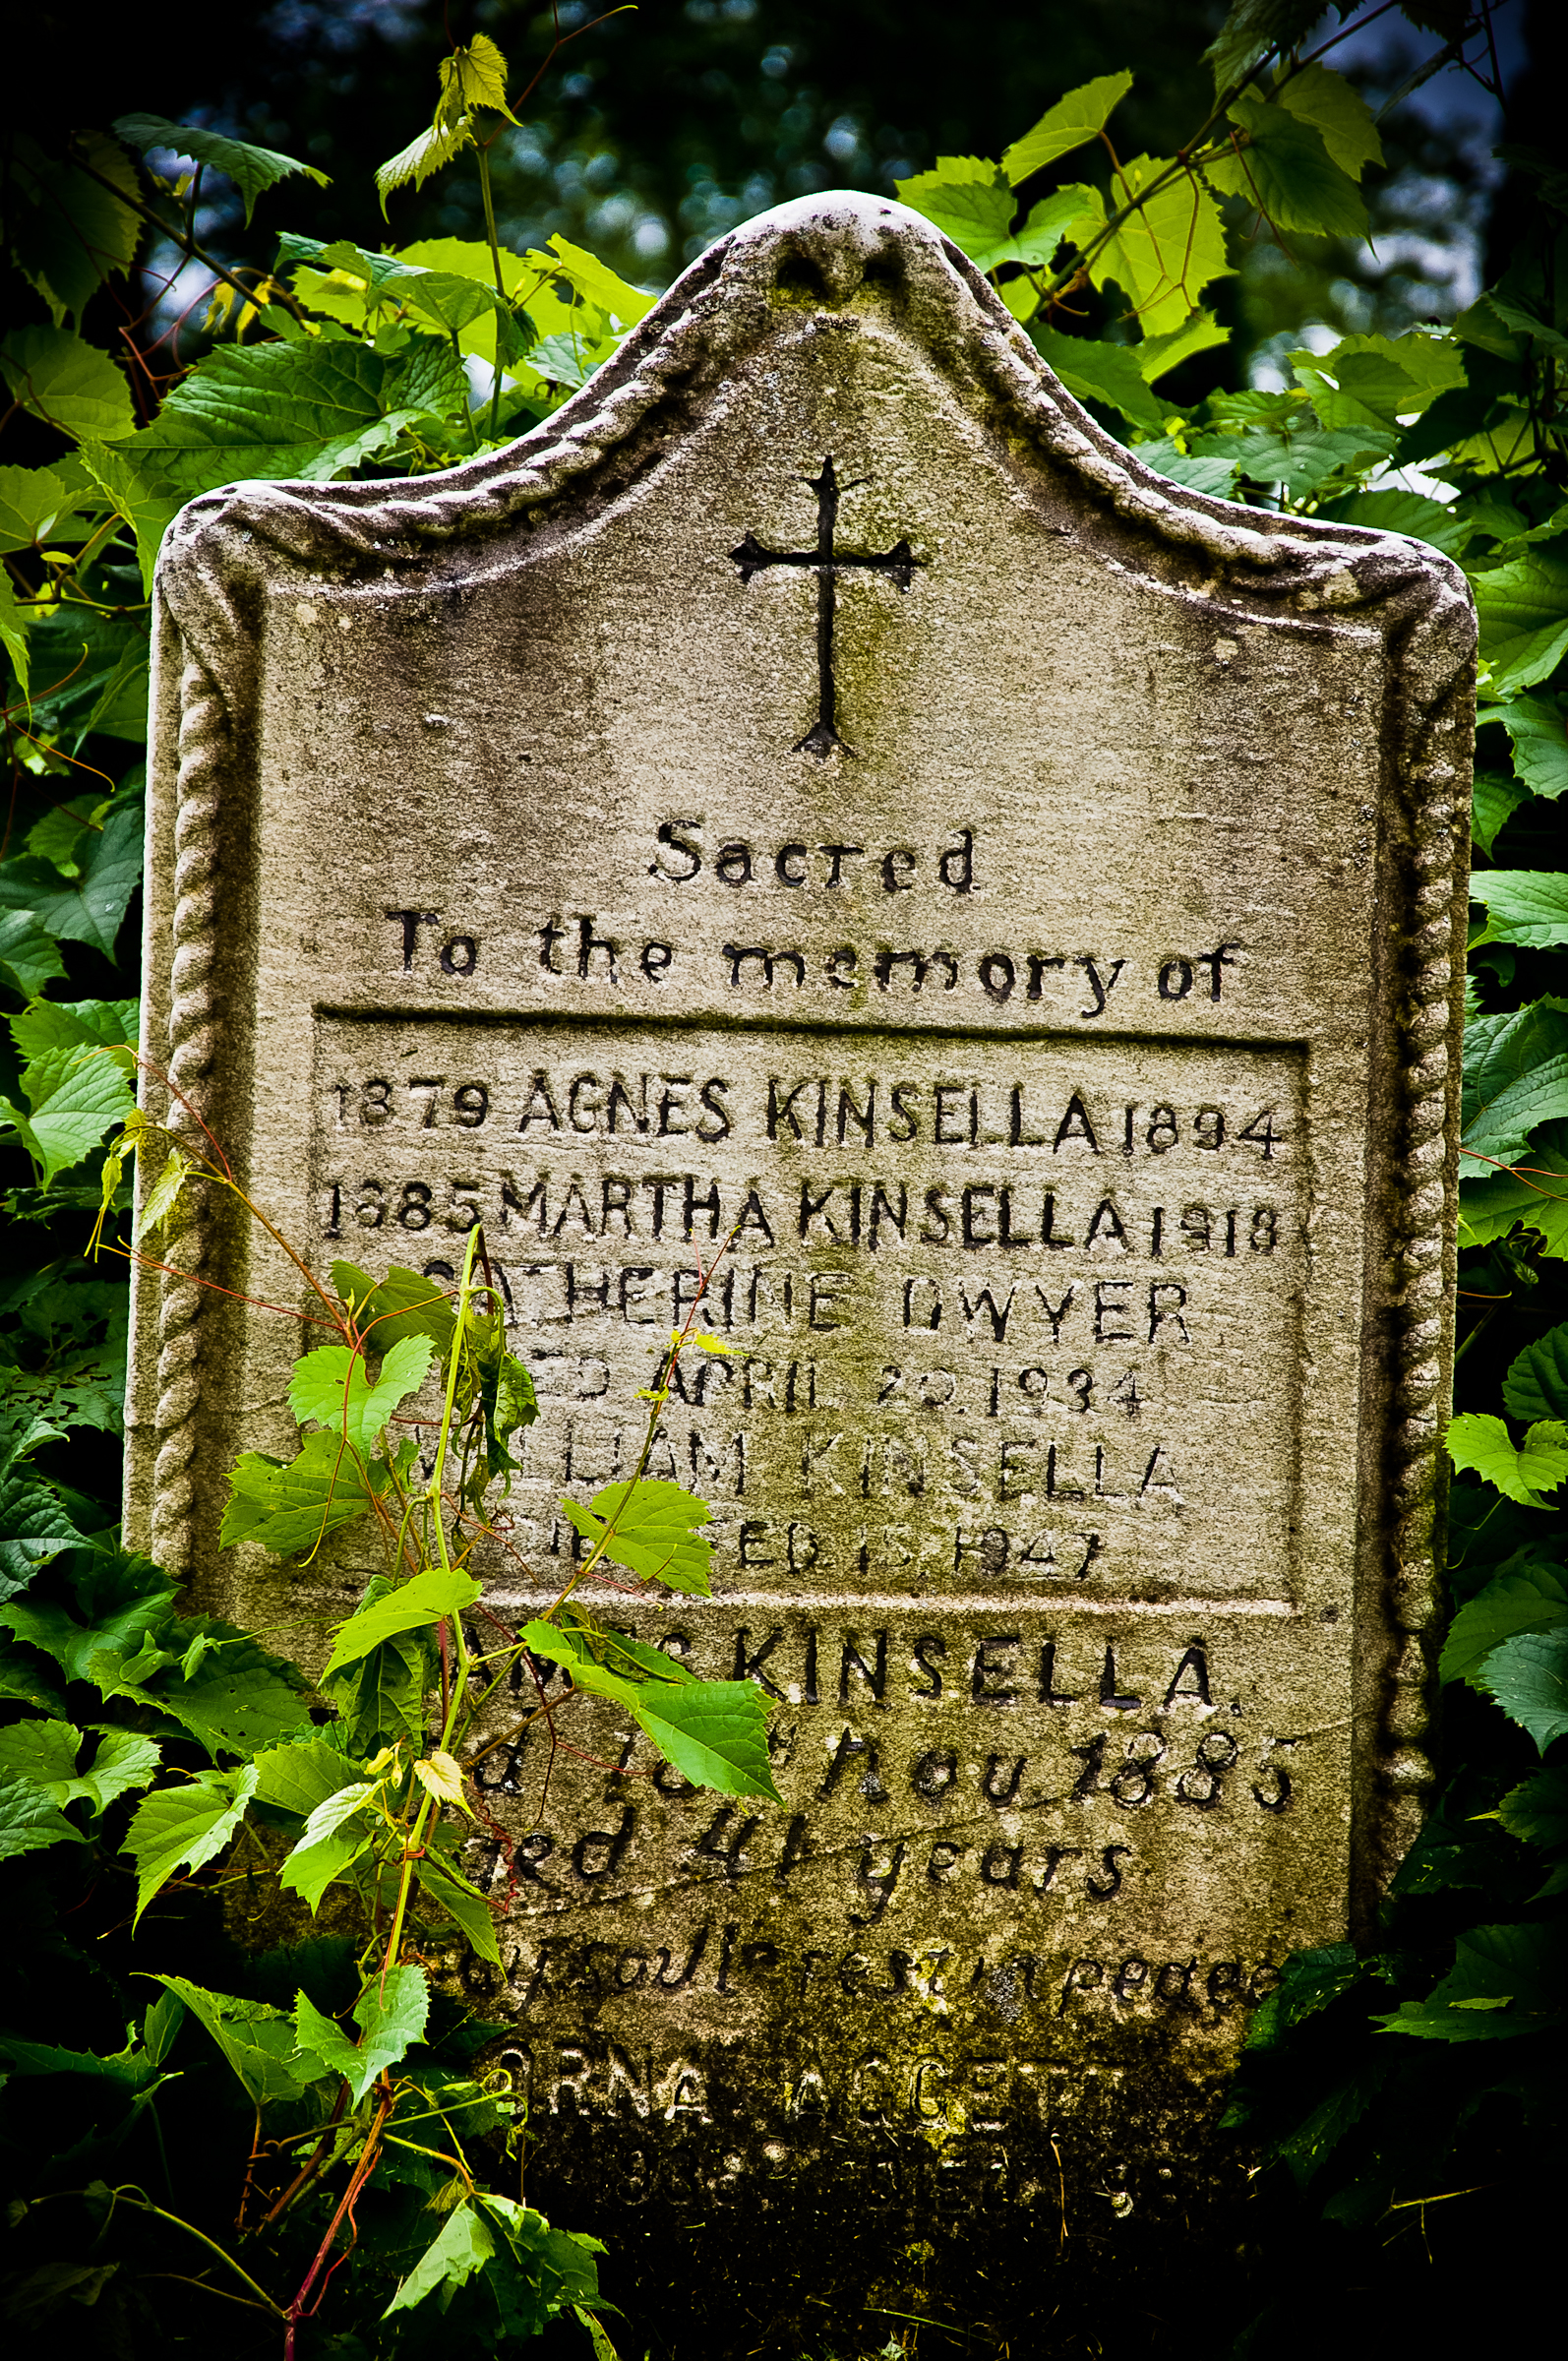 File:Brouviller pierre tombale cimetière église Saint Remi17.jpg -  Wikimedia Commons